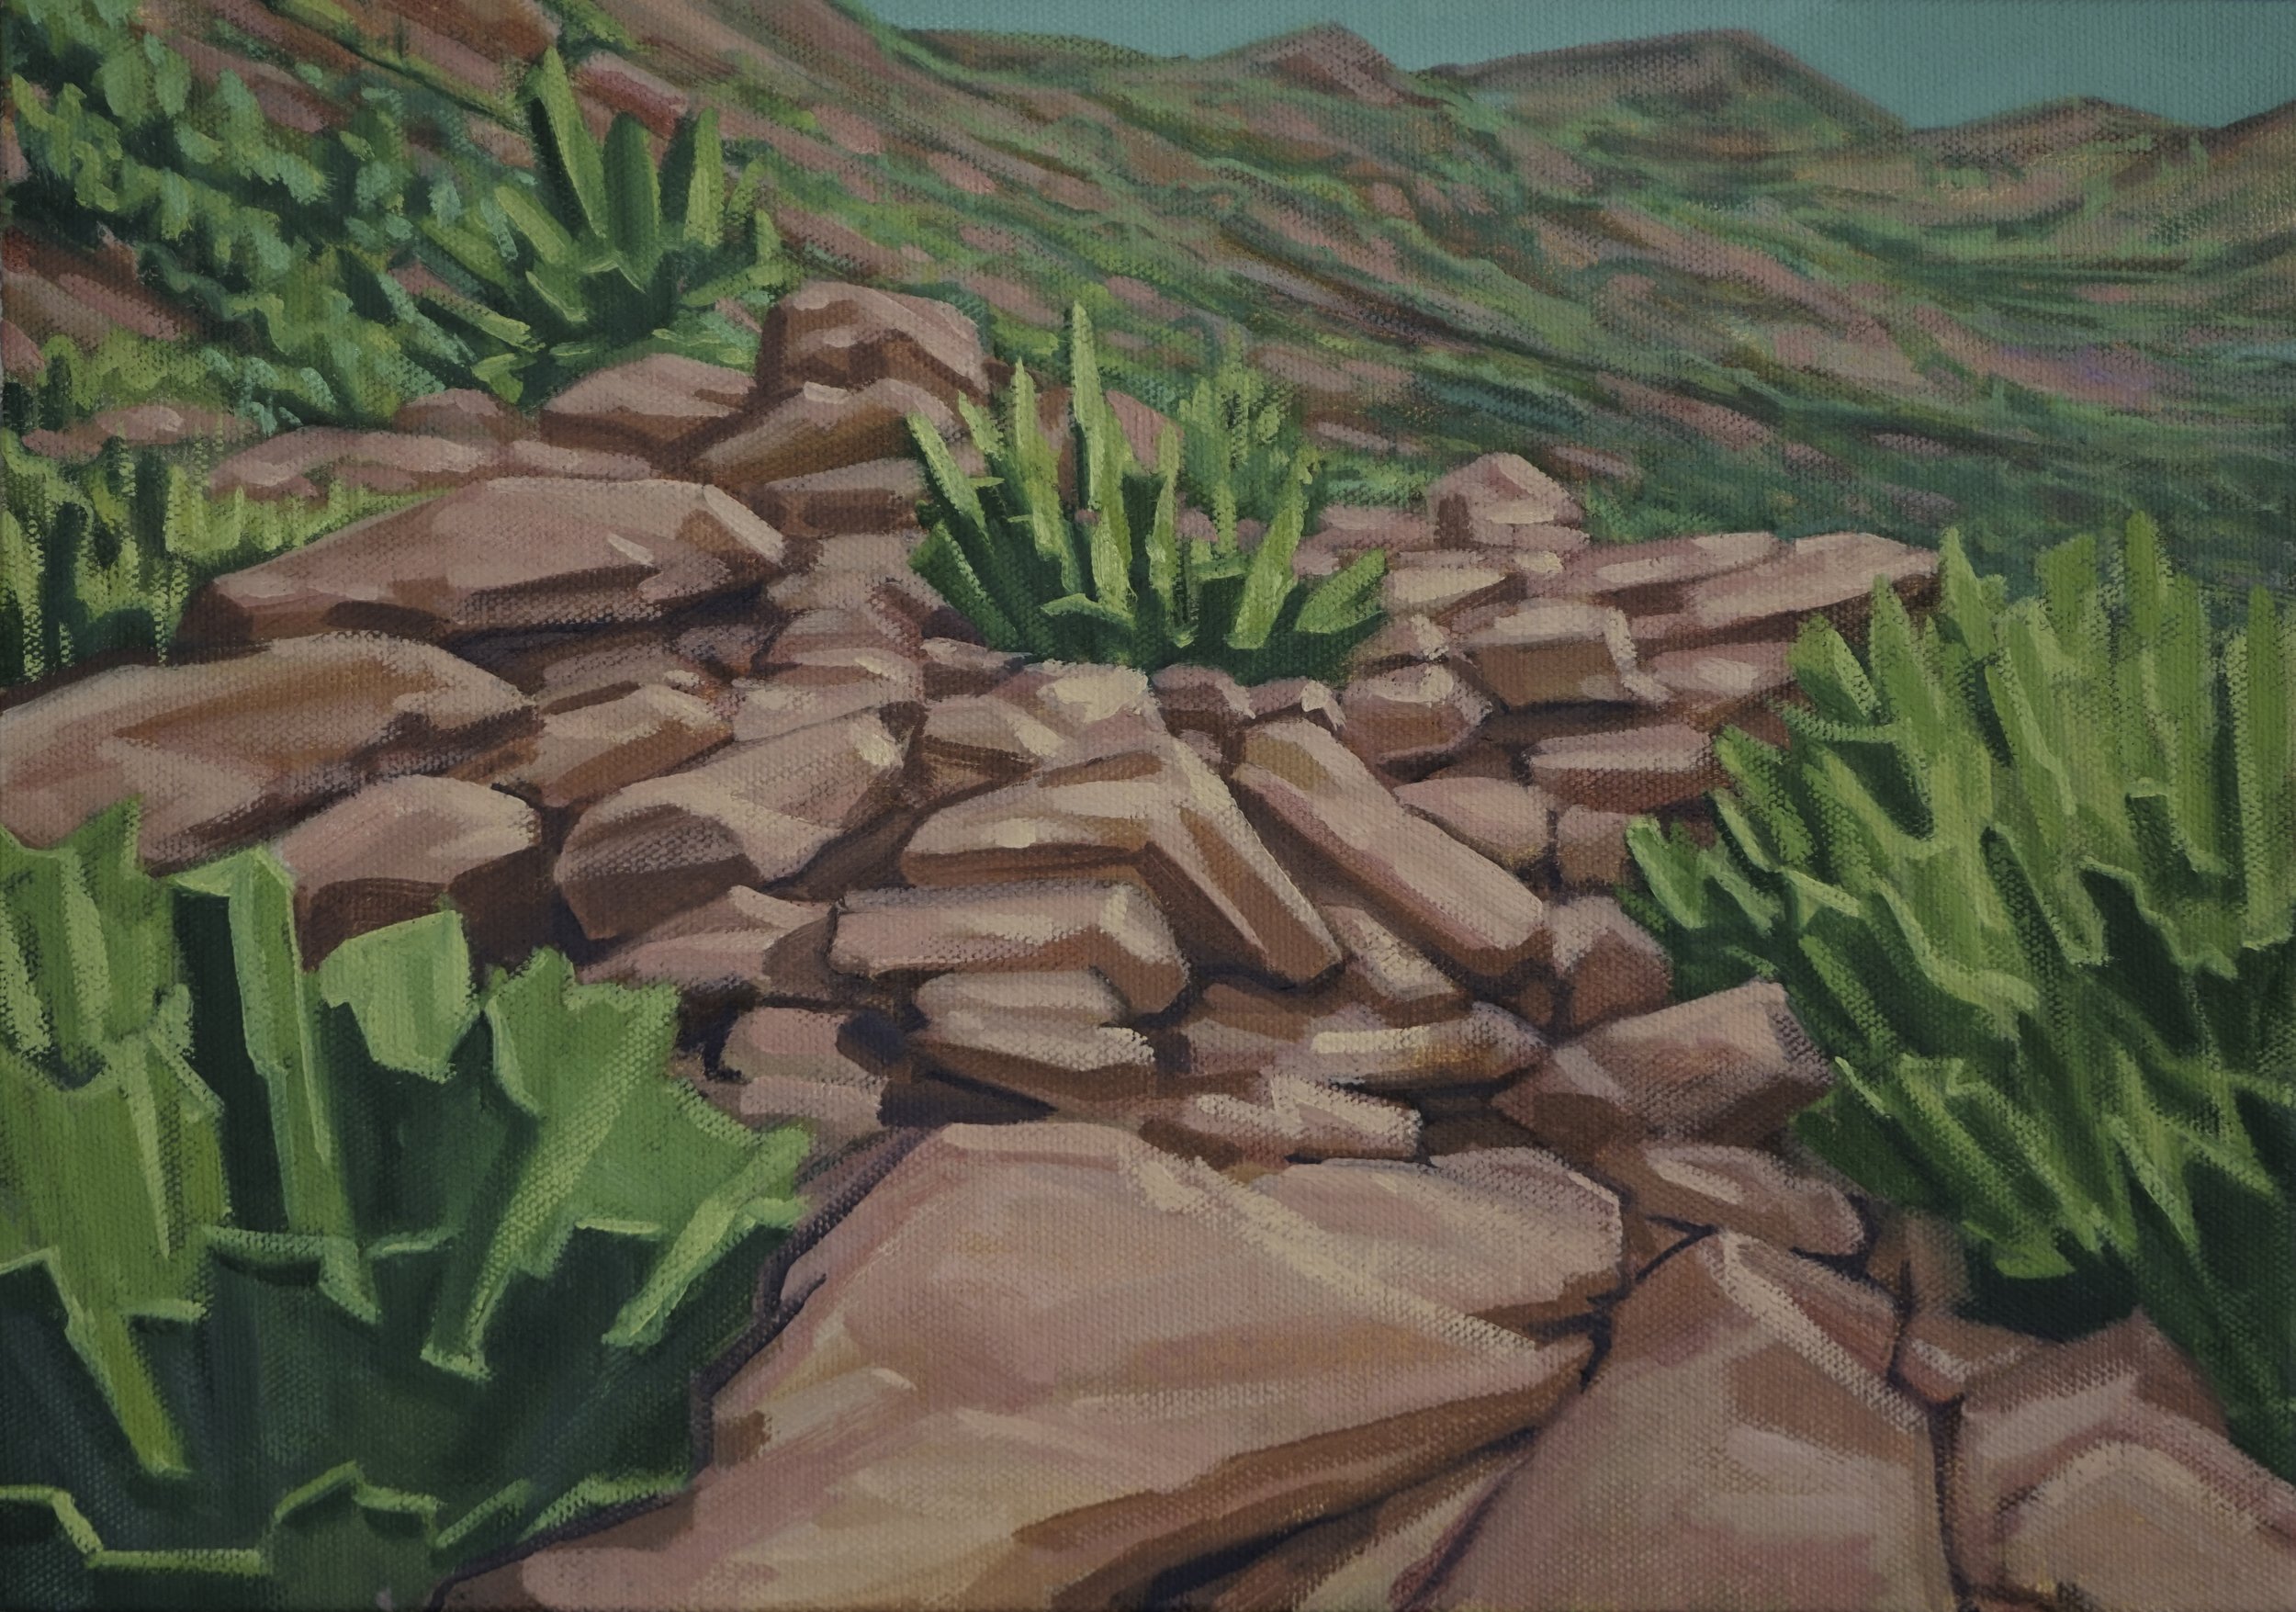 Rocks (outcrop)